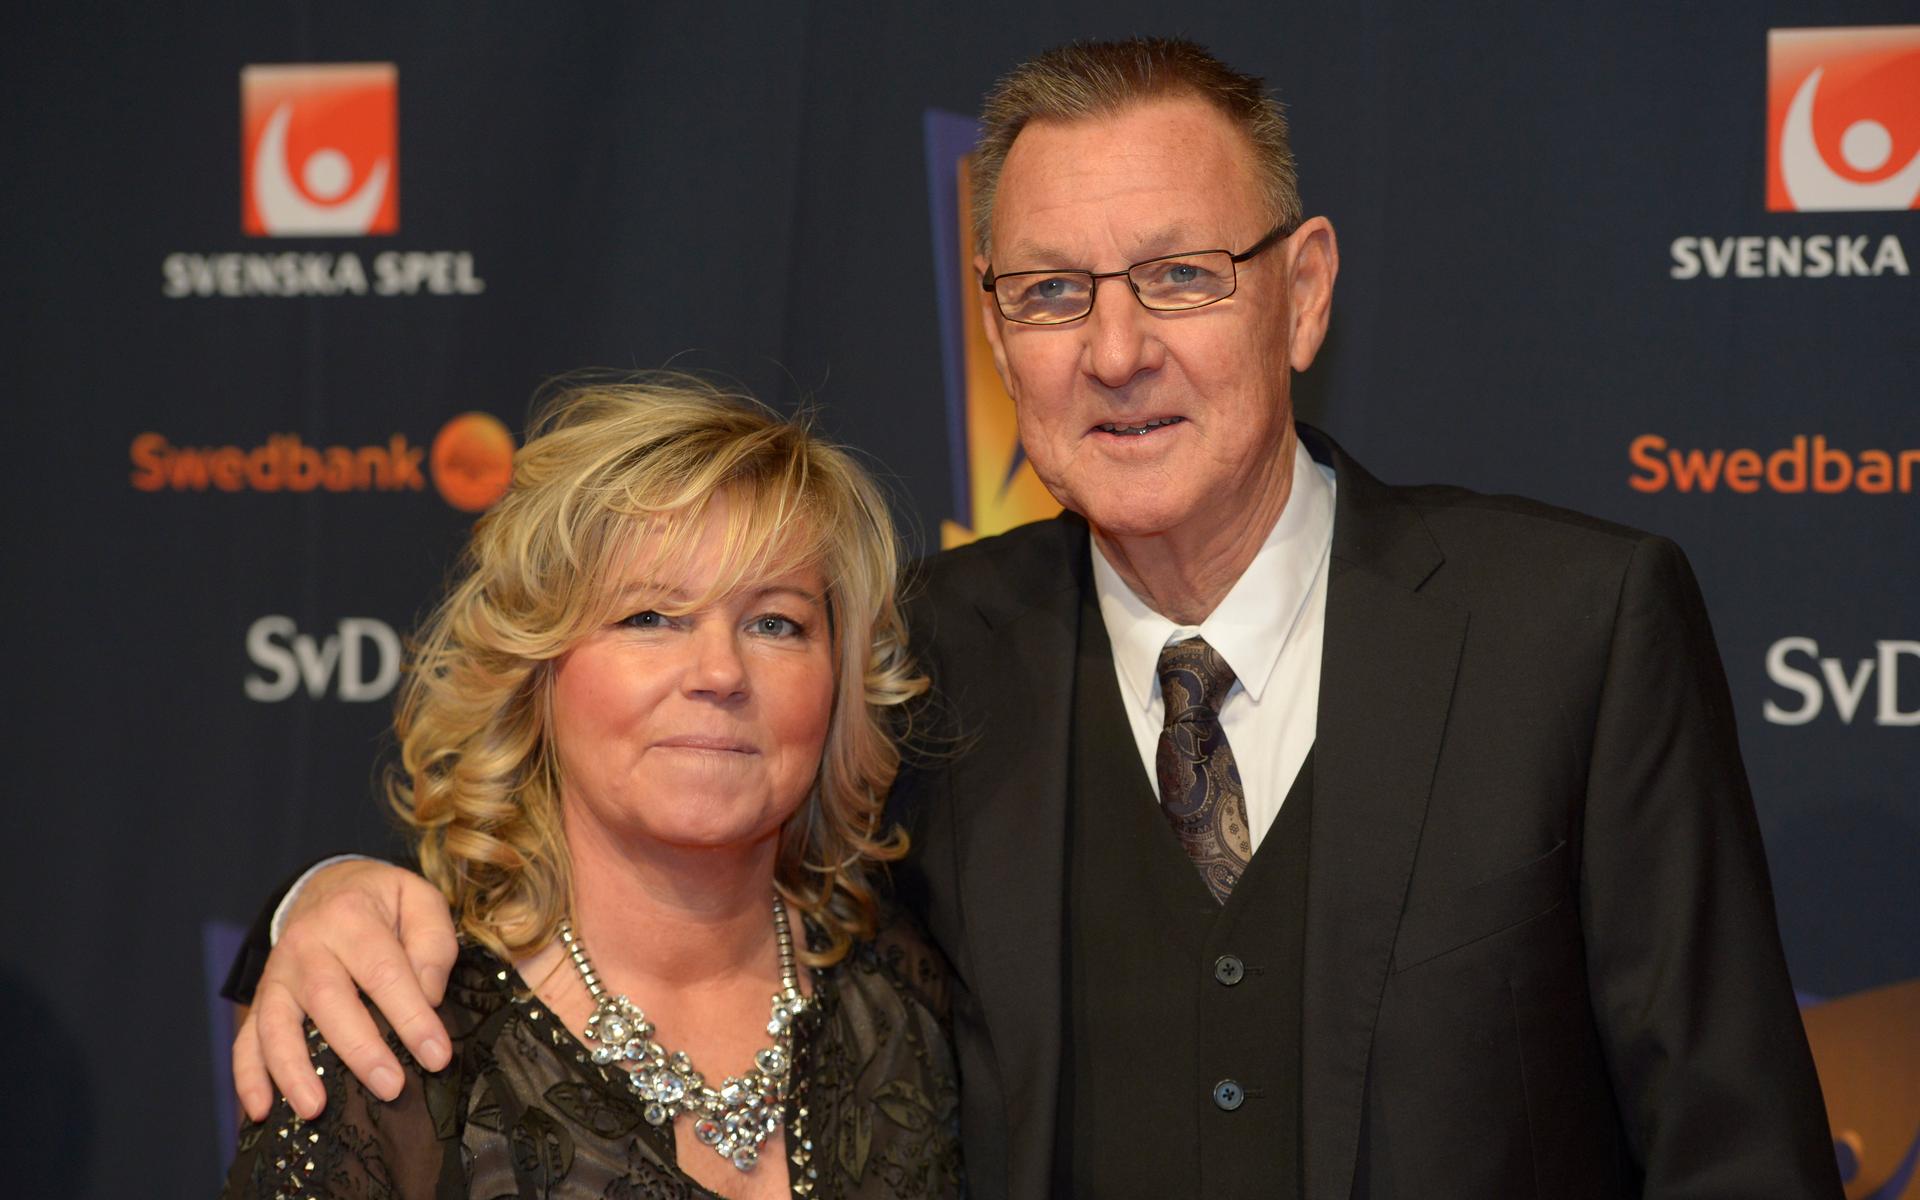 Ulf Lyfors, med hustrun Marika Domanski Lyfors, som också varit svensk förbundskapten, på Idrottsgalan 2014. Ulf Lyfors blev 78 år.